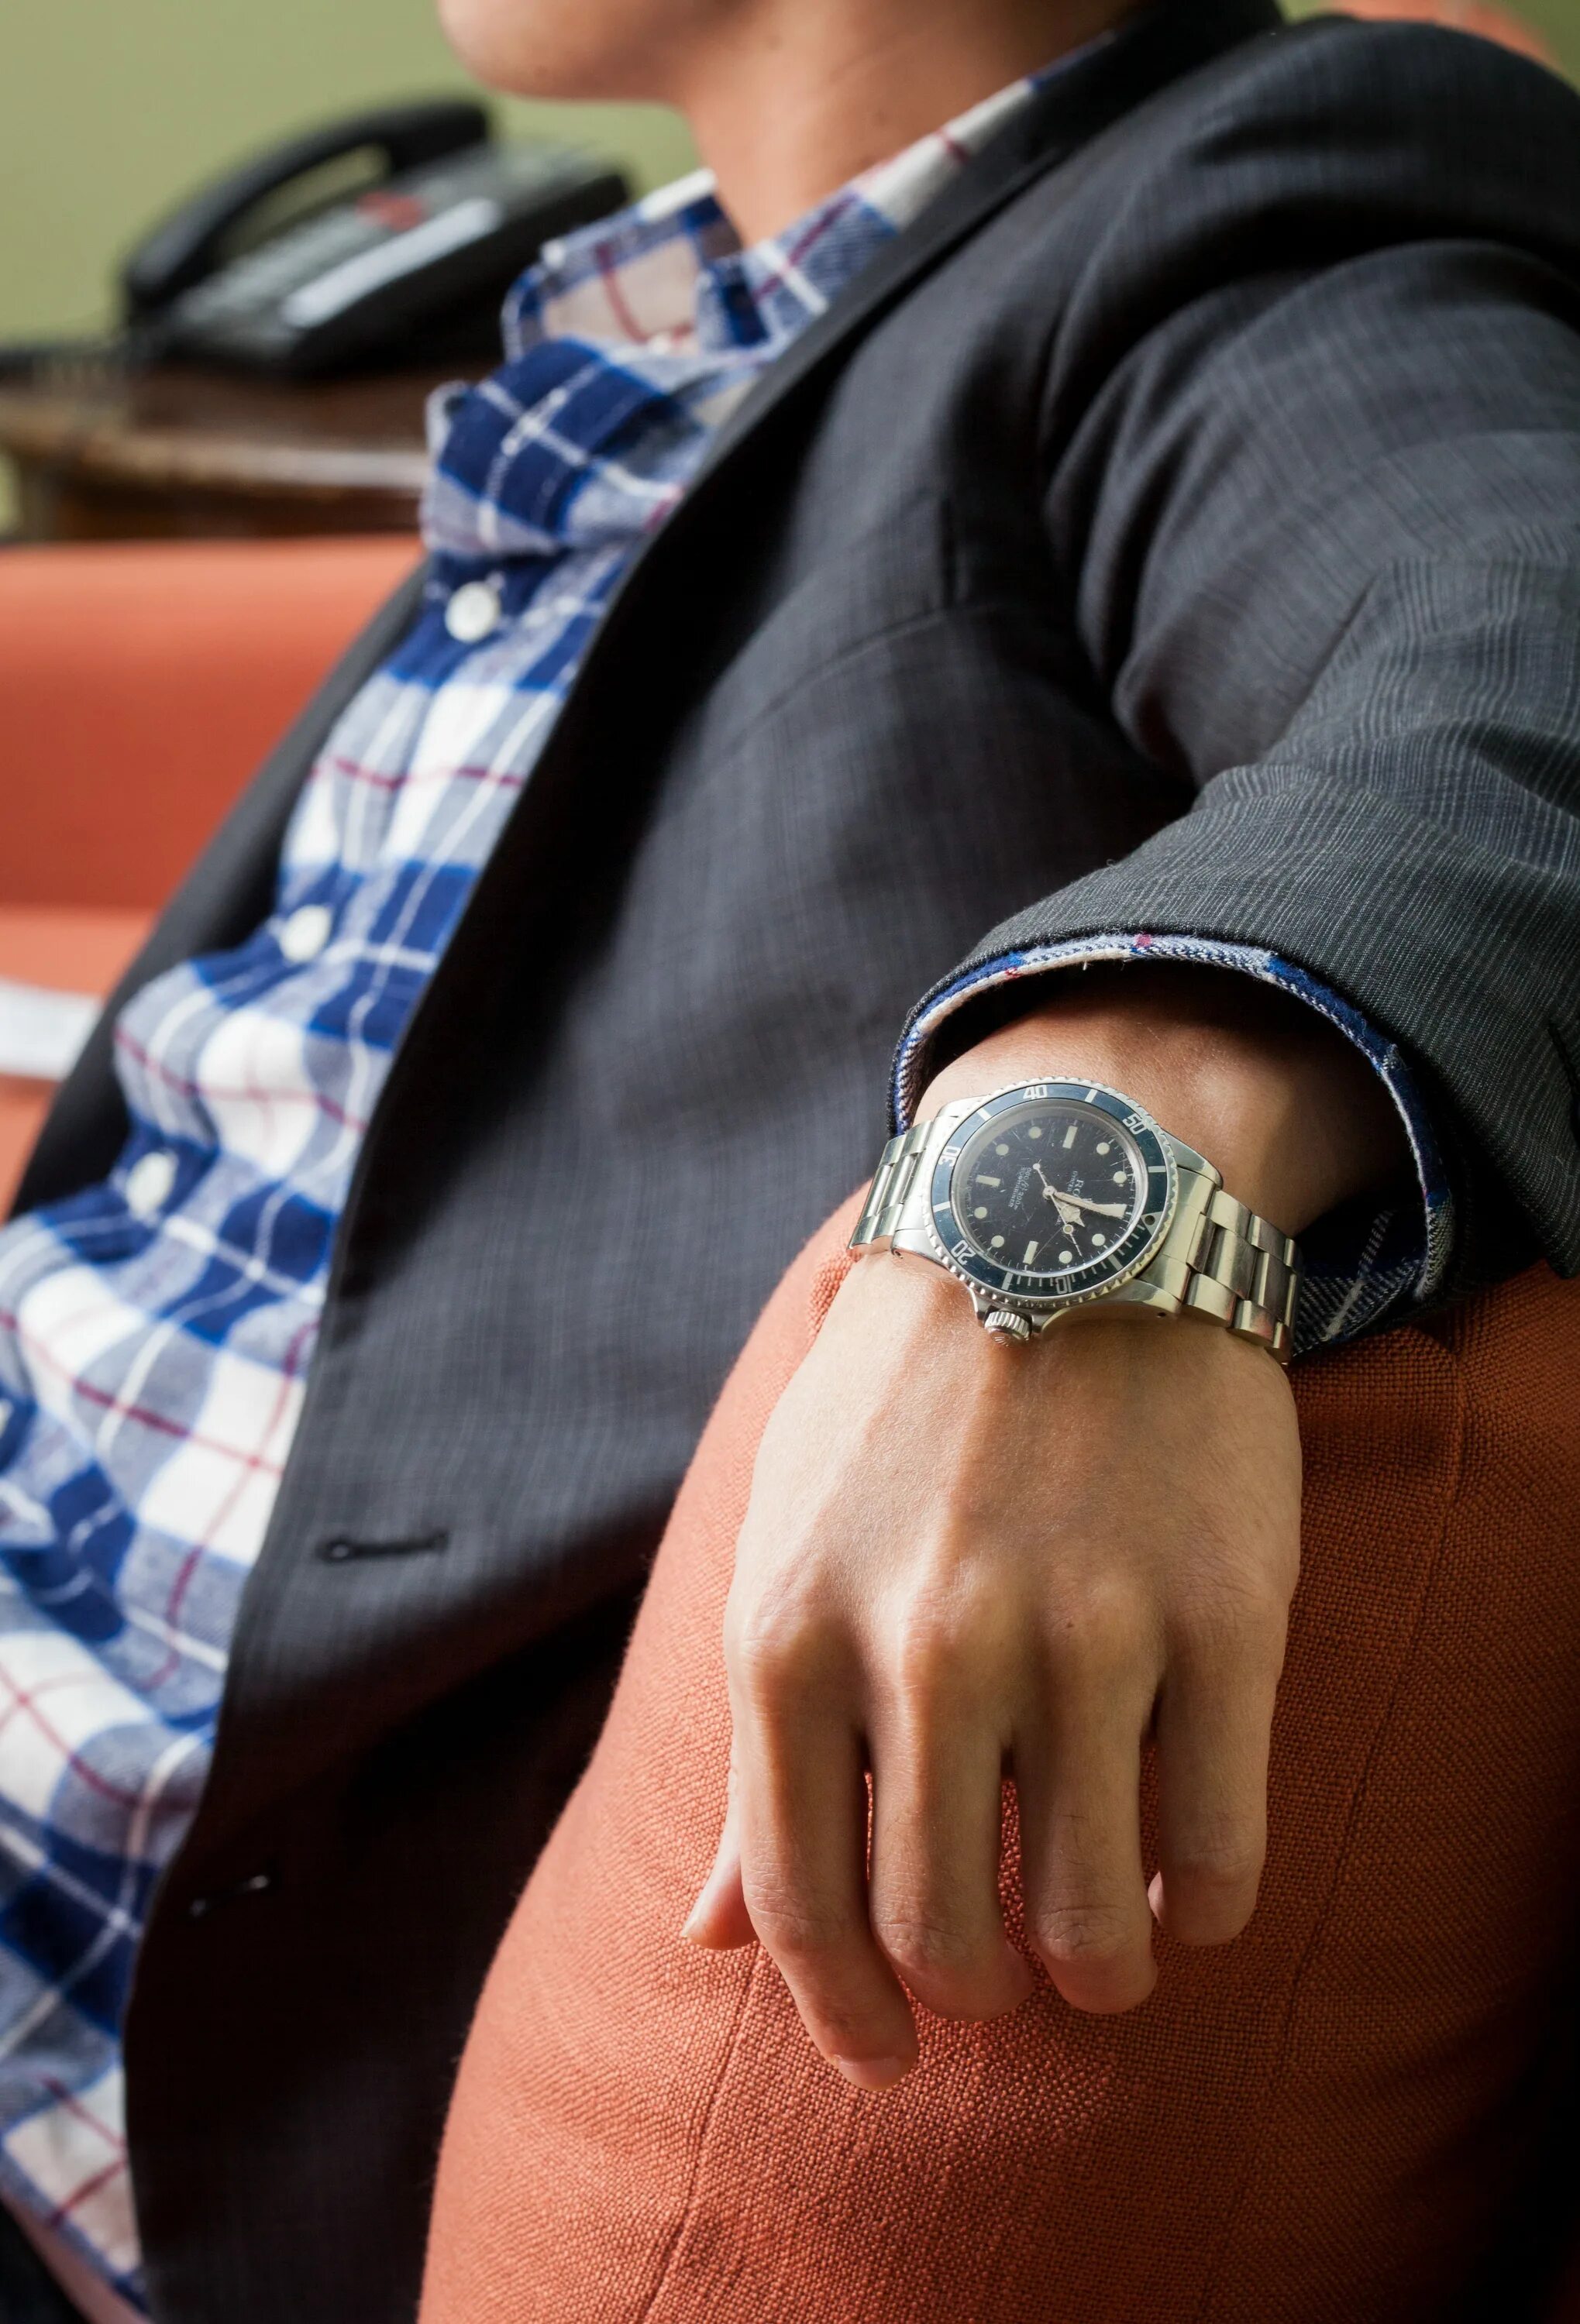 Rolex Submariner on hand. Мужские часы на руке. Рука часы элегантная. Мужчина с часами на руке. Как должен сидеть браслет часов